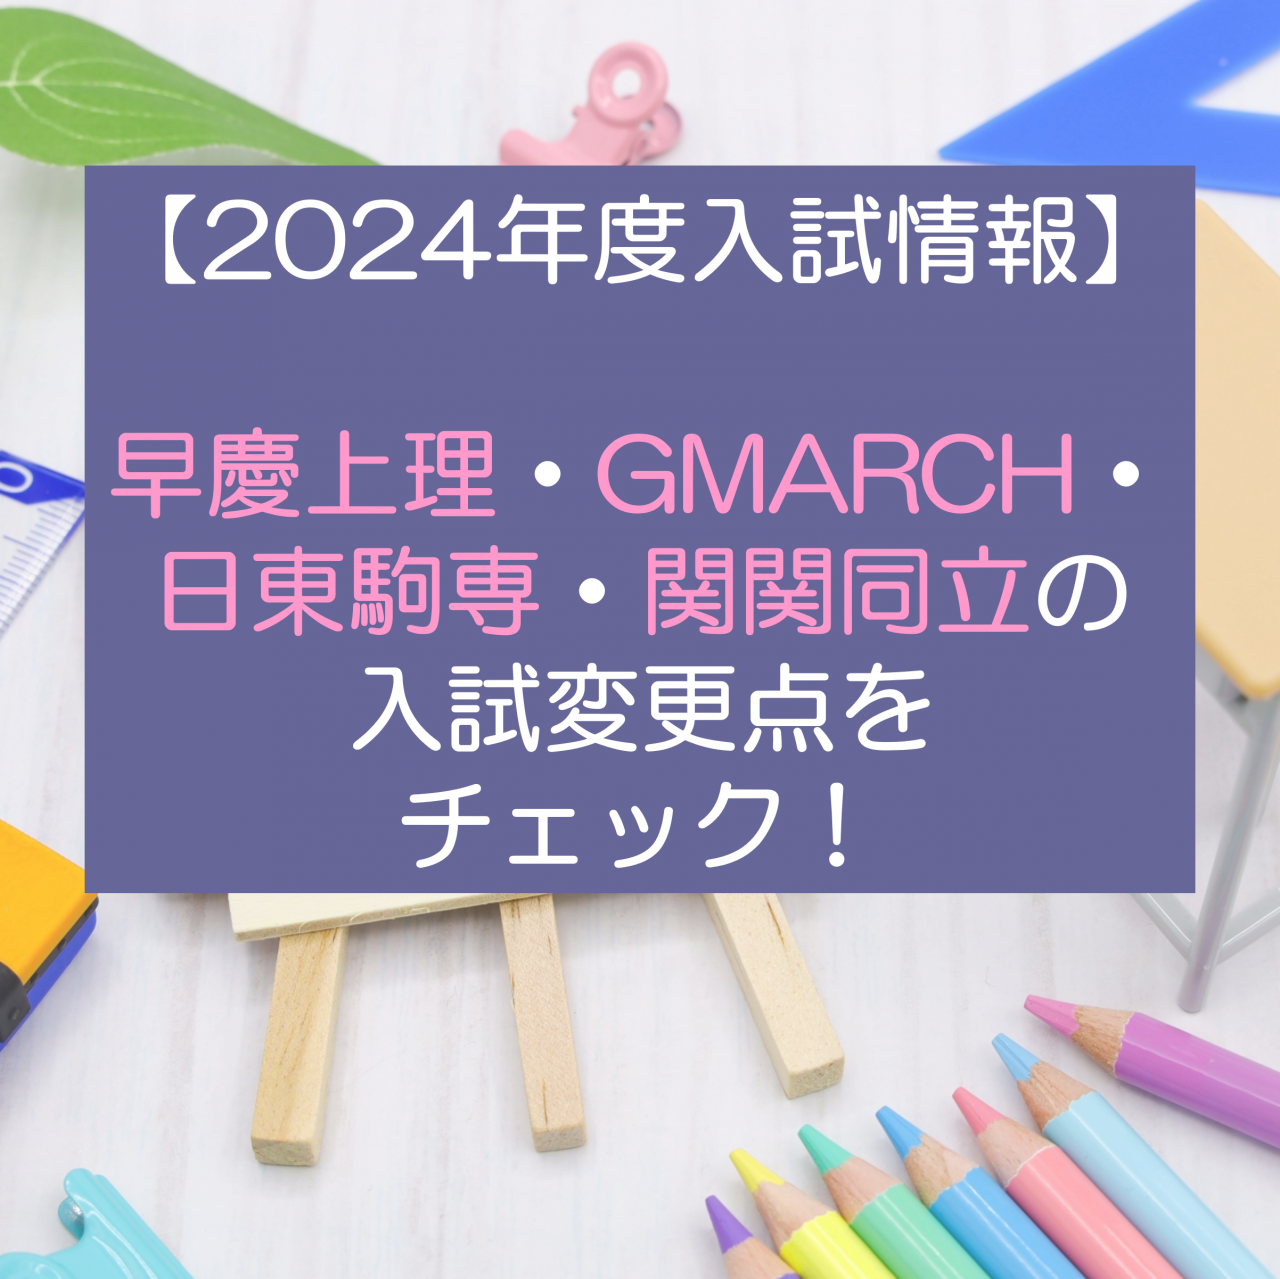 【2024年度入試情報】早慶上理・GMARCH・日東駒専・関関同立の入試変更点